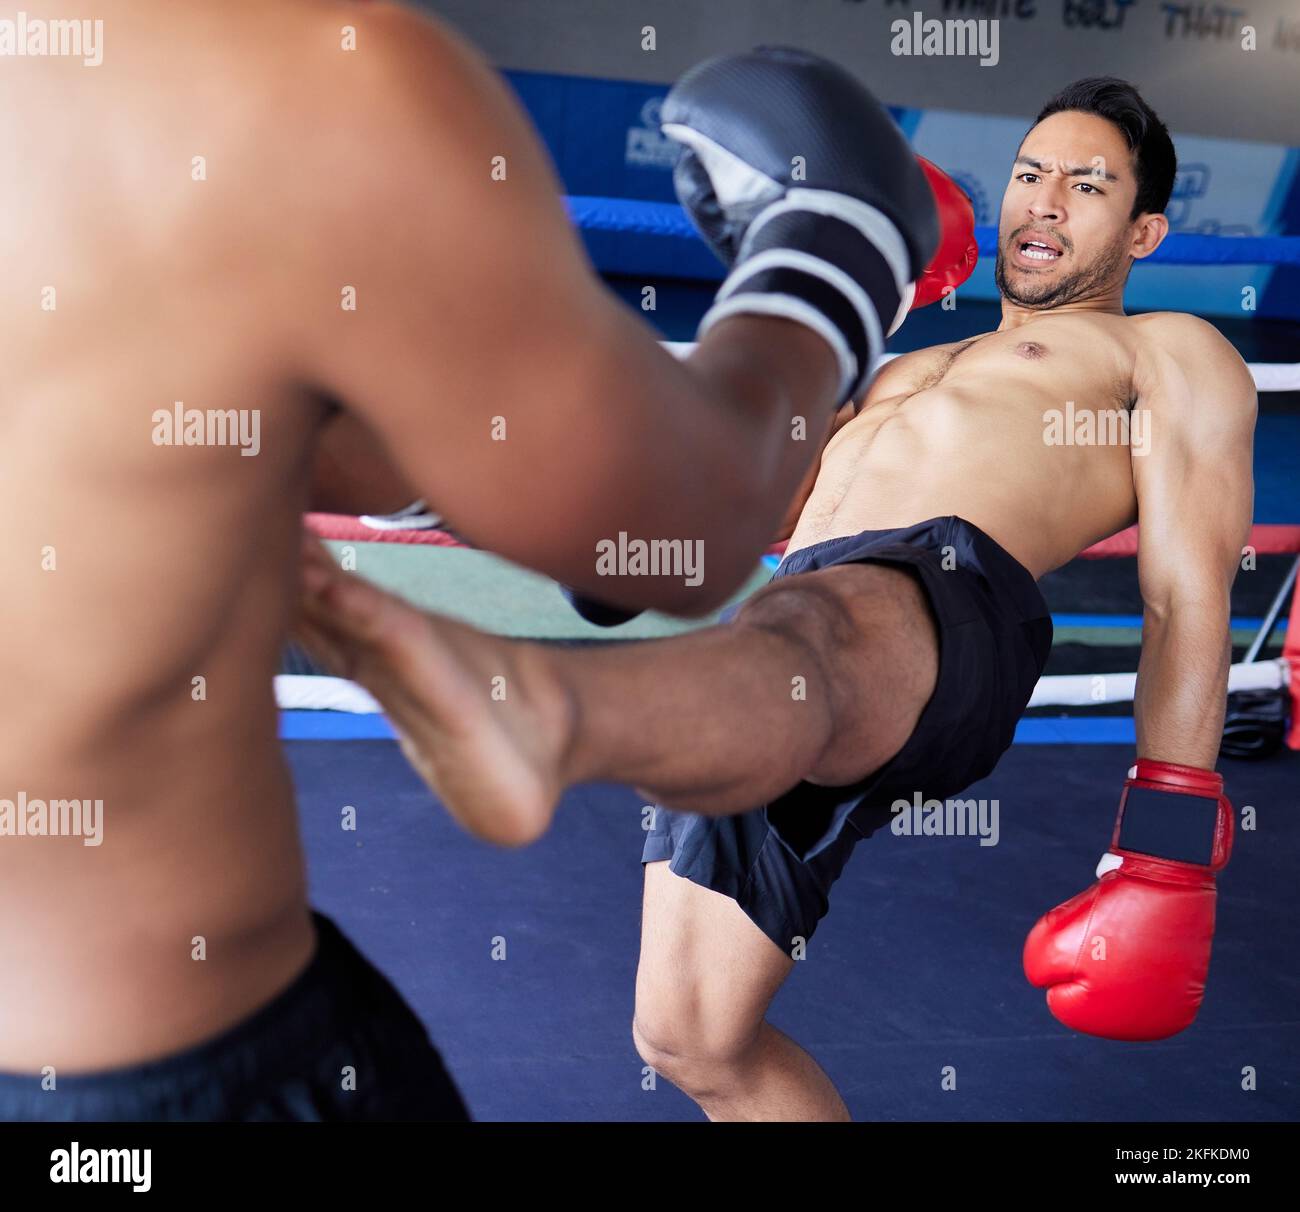 Boxer, lotta e competizione sportiva con gli uomini nel ring di pugilato per l'esercizio fisico, l'allenamento e le arti marziali in un centro fitness. Atleta in azione Foto Stock